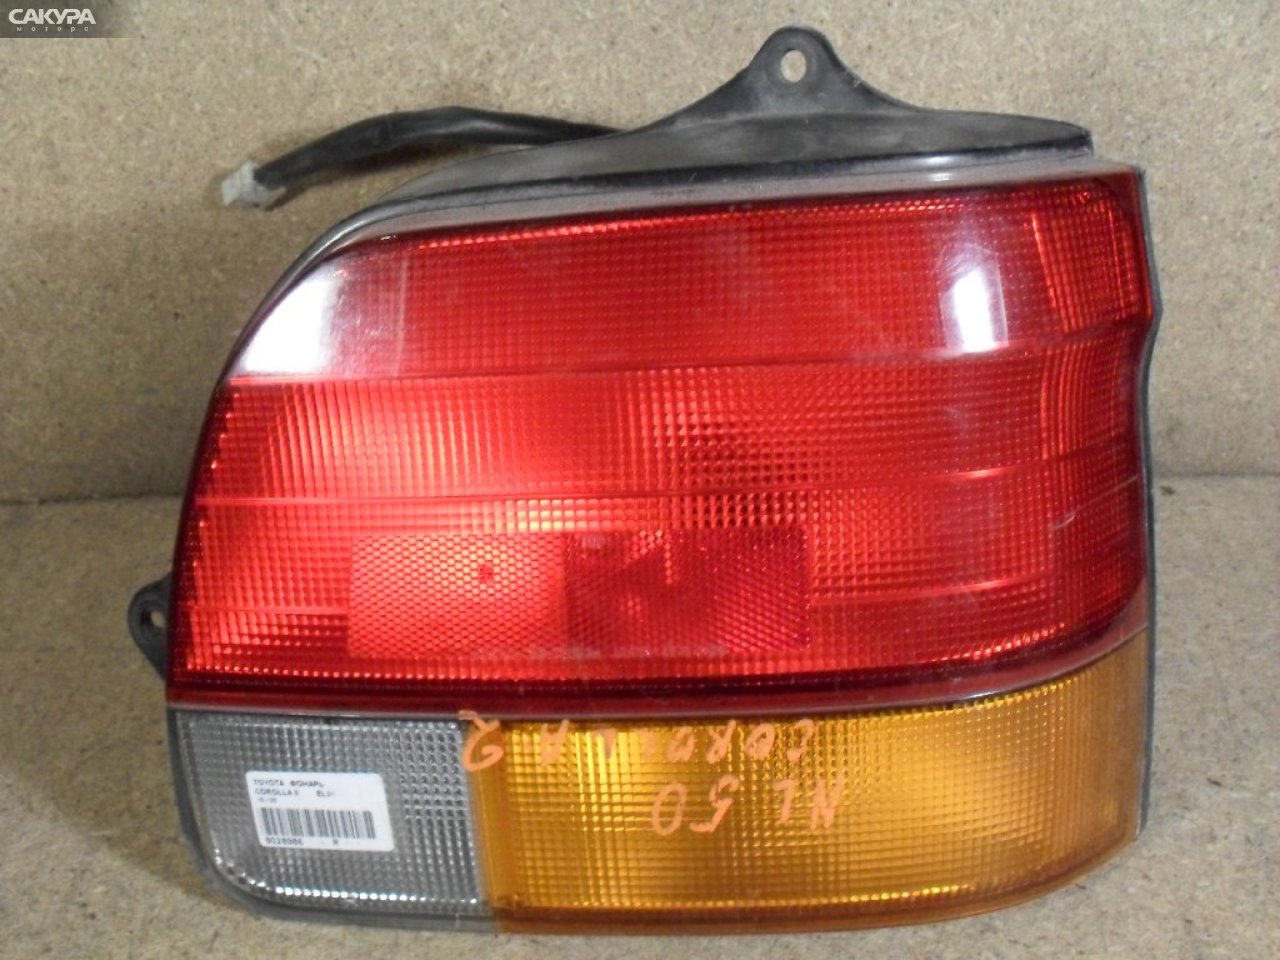 Фонарь стоп-сигнала правый Toyota Corolla II EL51 16-123: купить в Сакура Абакан.